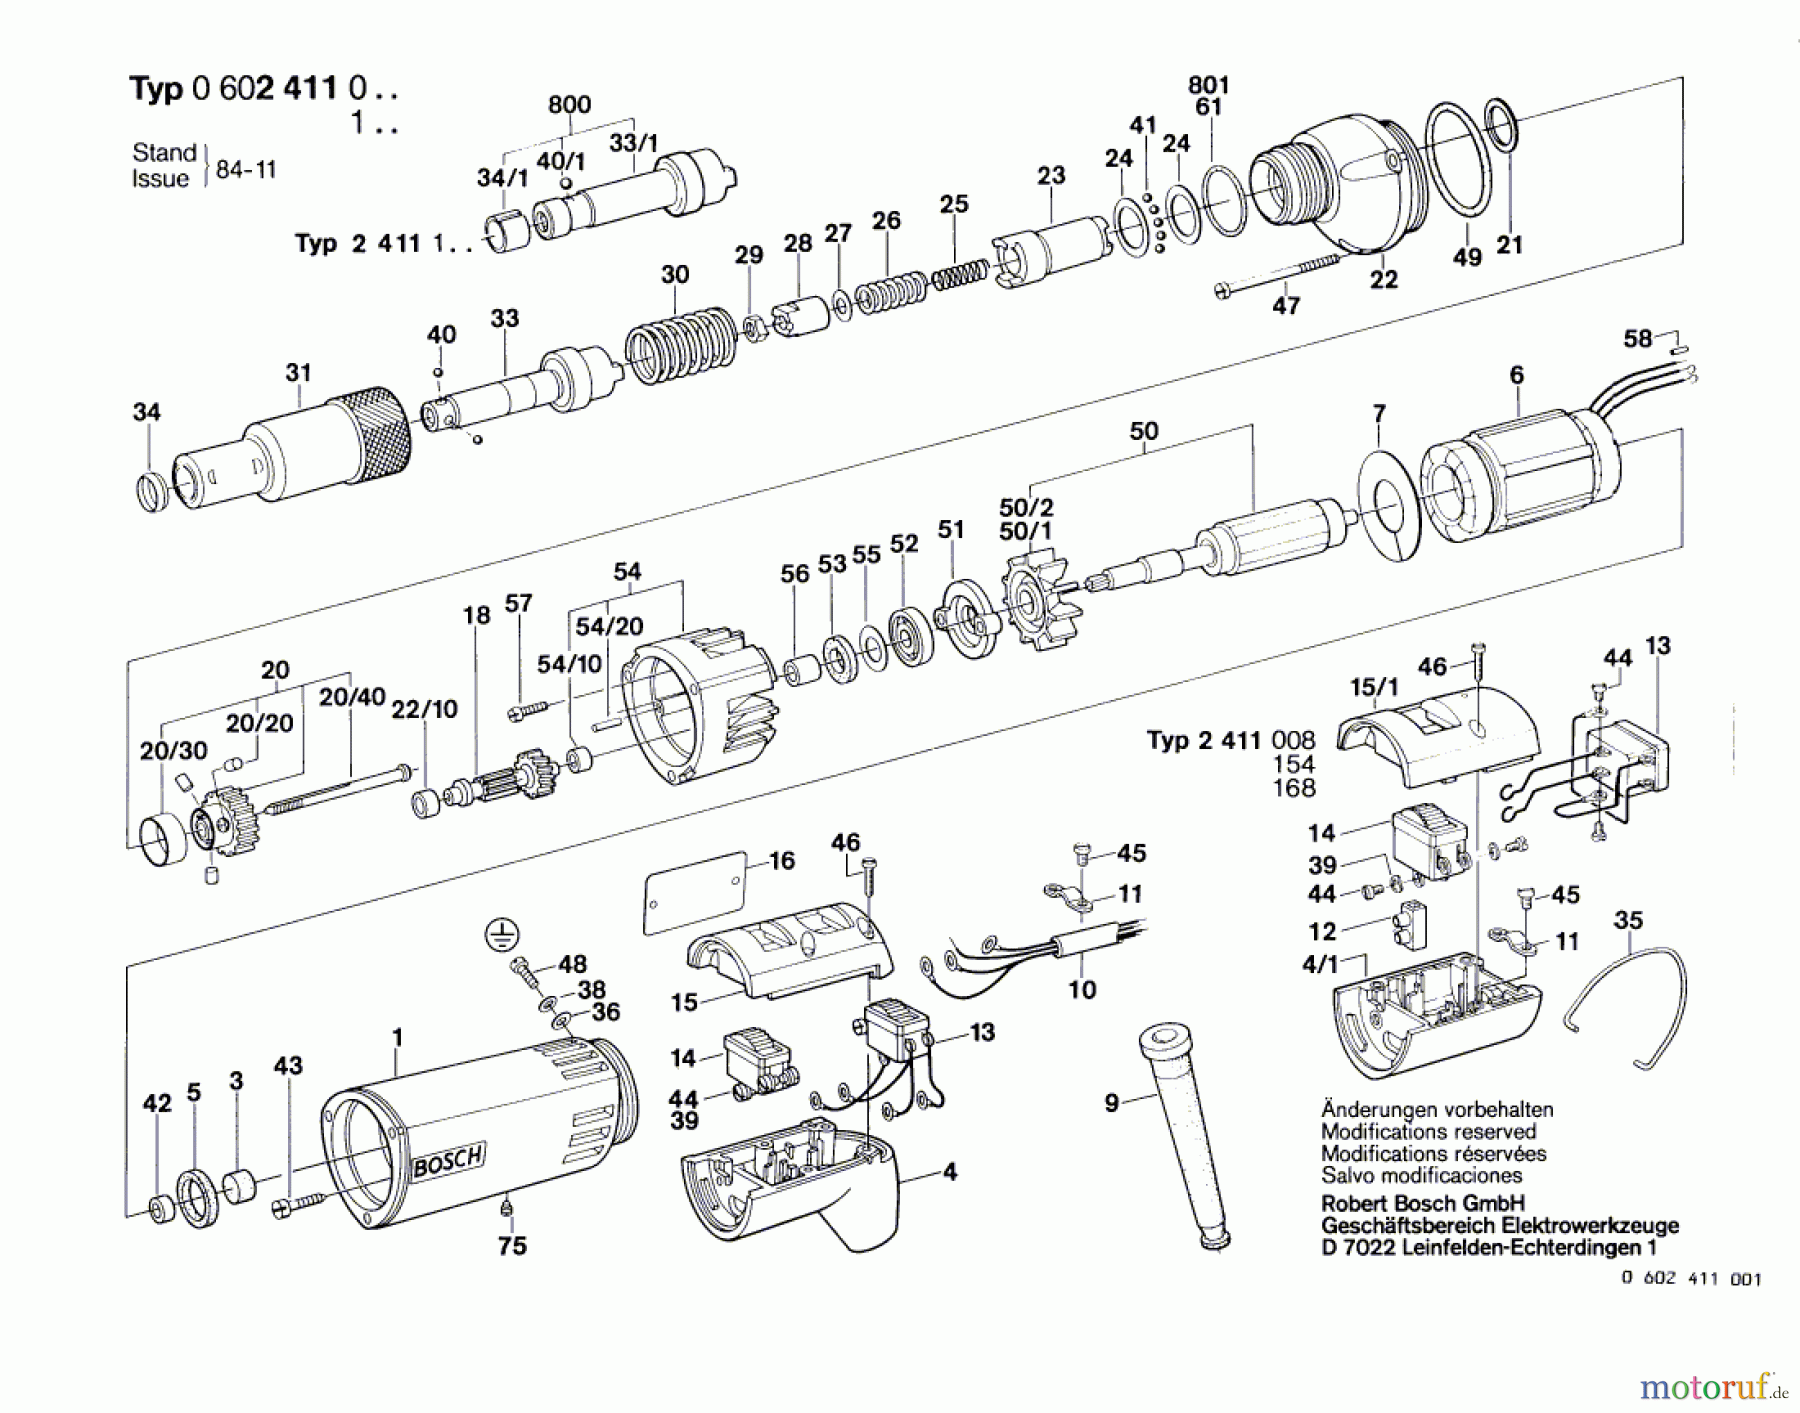  Bosch Werkzeug Schrauber ---- Seite 1